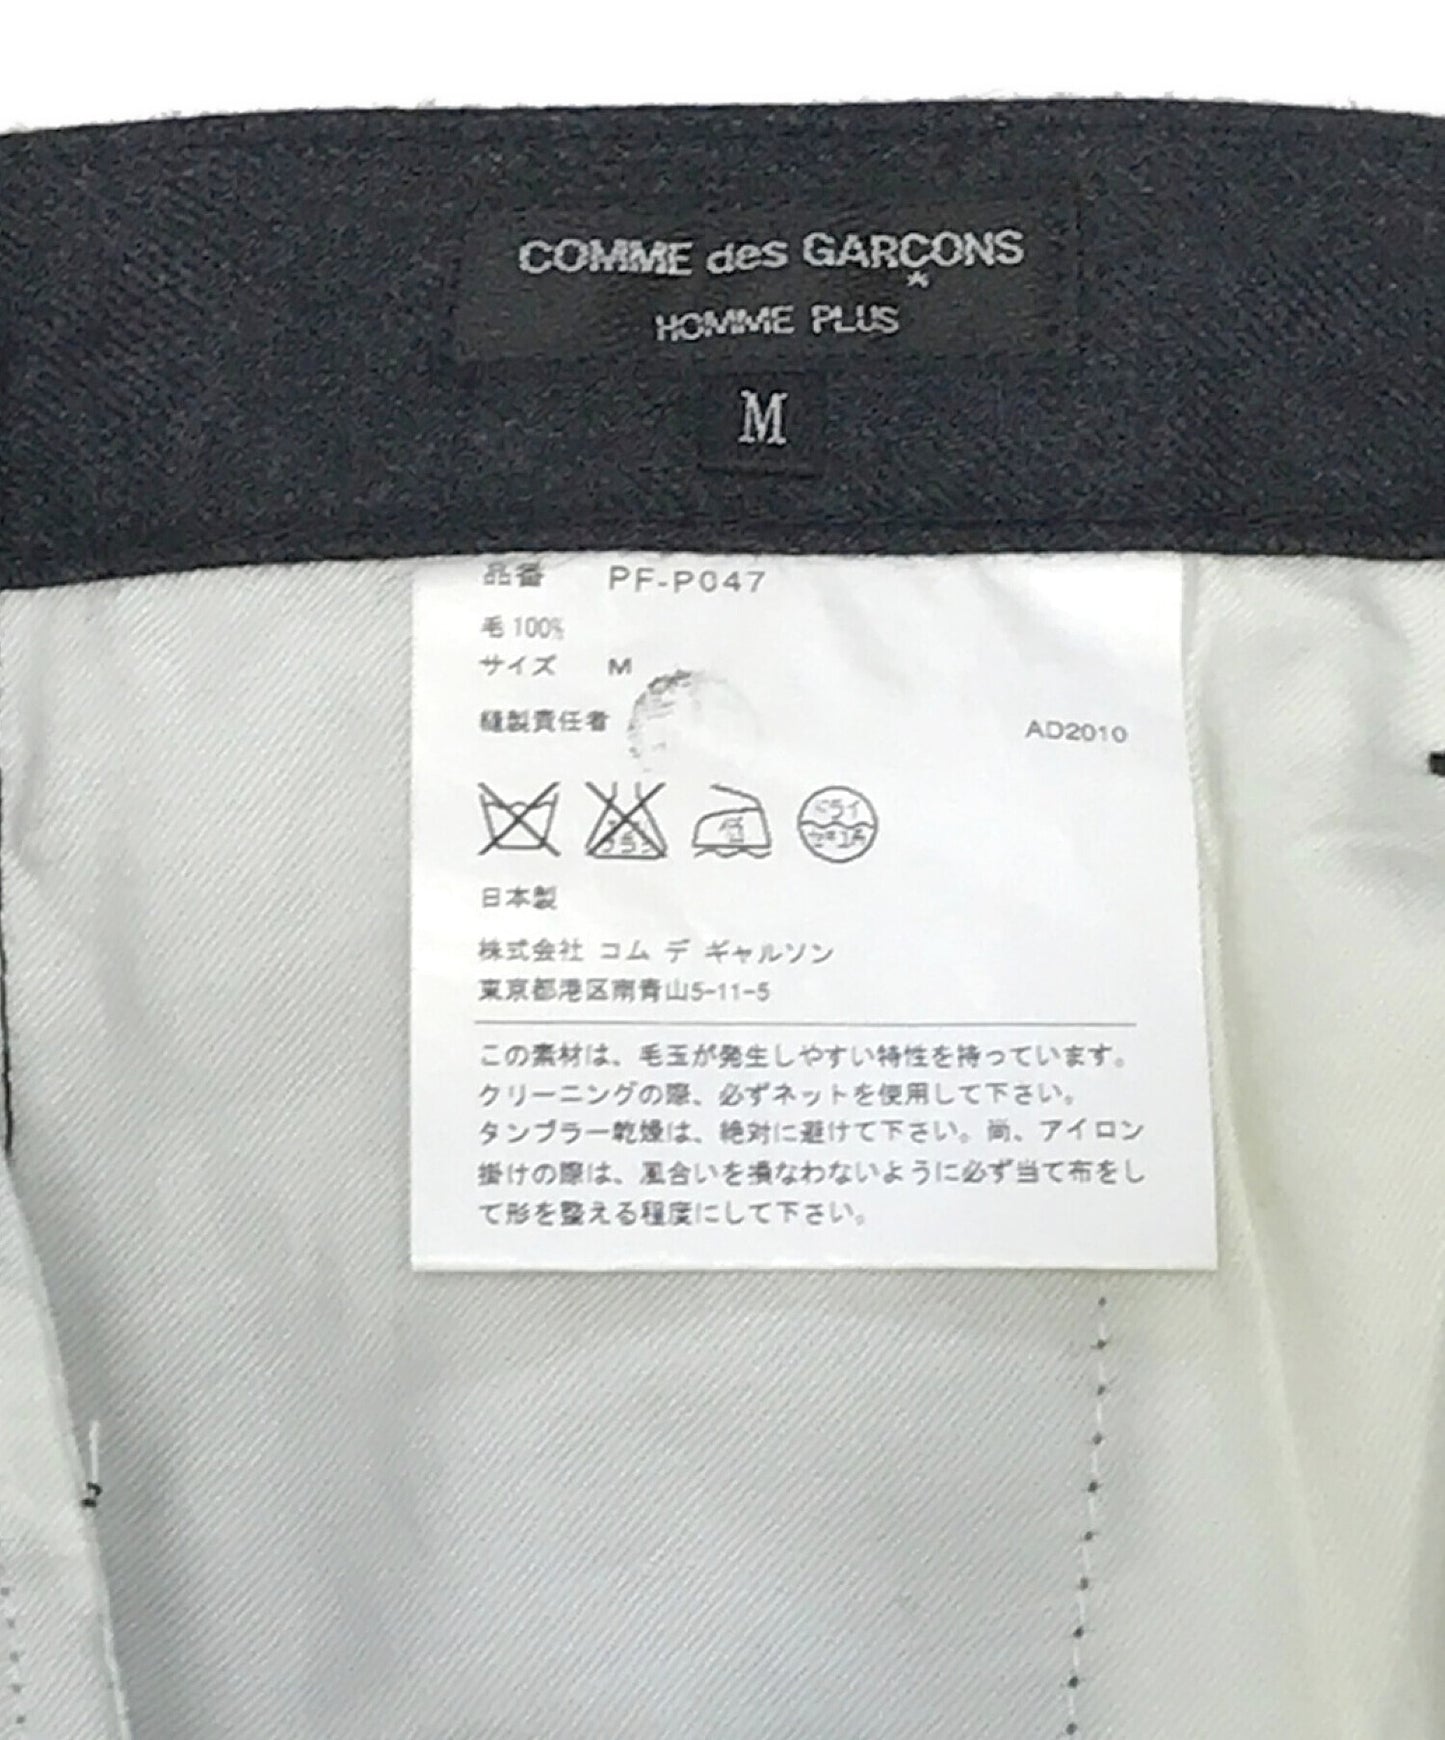 Comme des Garcons Homme Plus Wool Slacks PF-P047